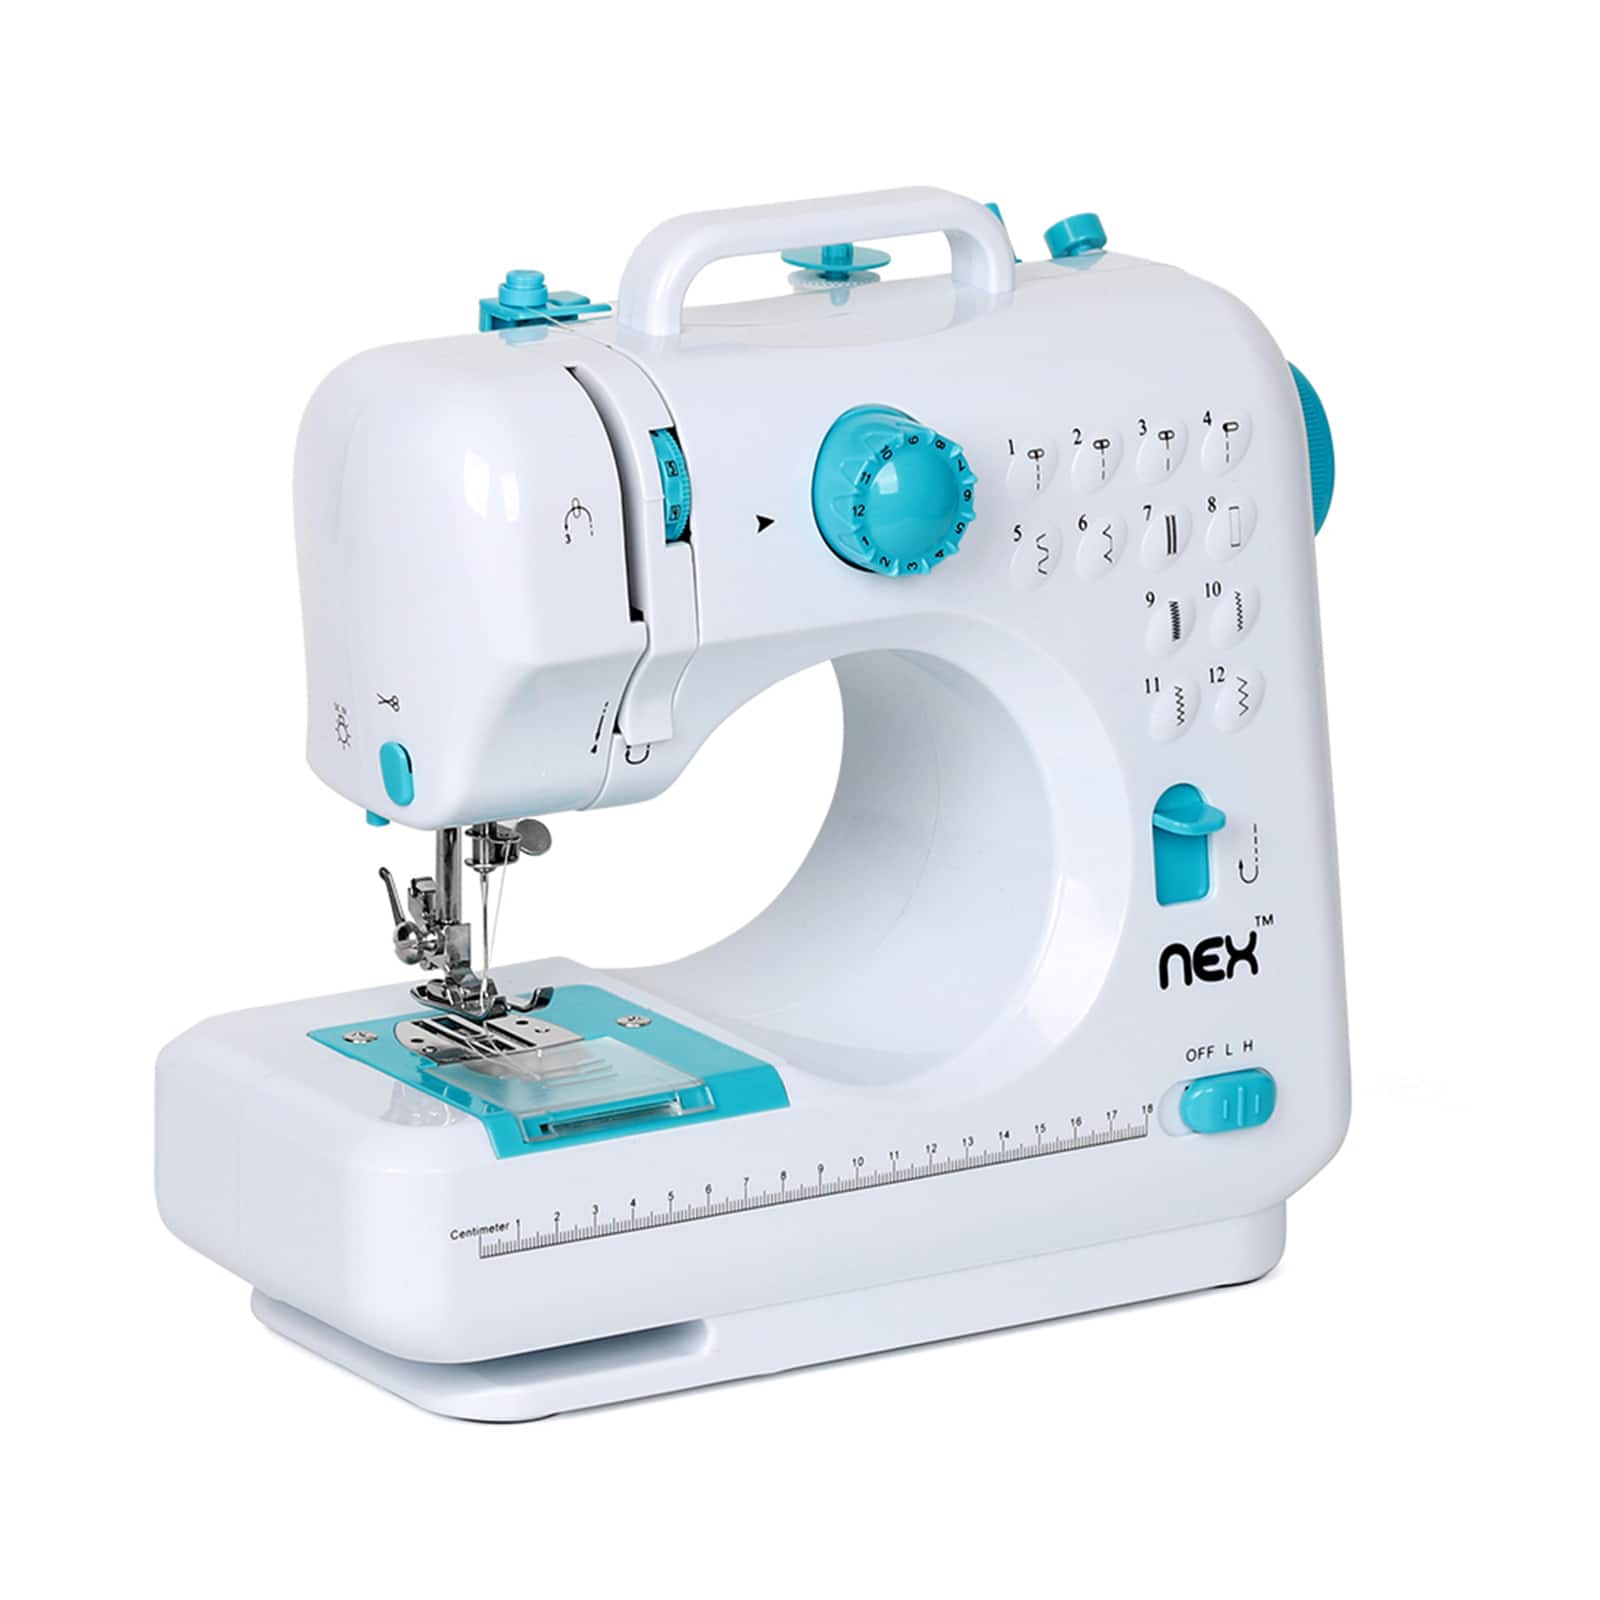 NEX&#x2122; Indigo Blue Modern Crafting Sewing Machine with 12 Built-In Stitches